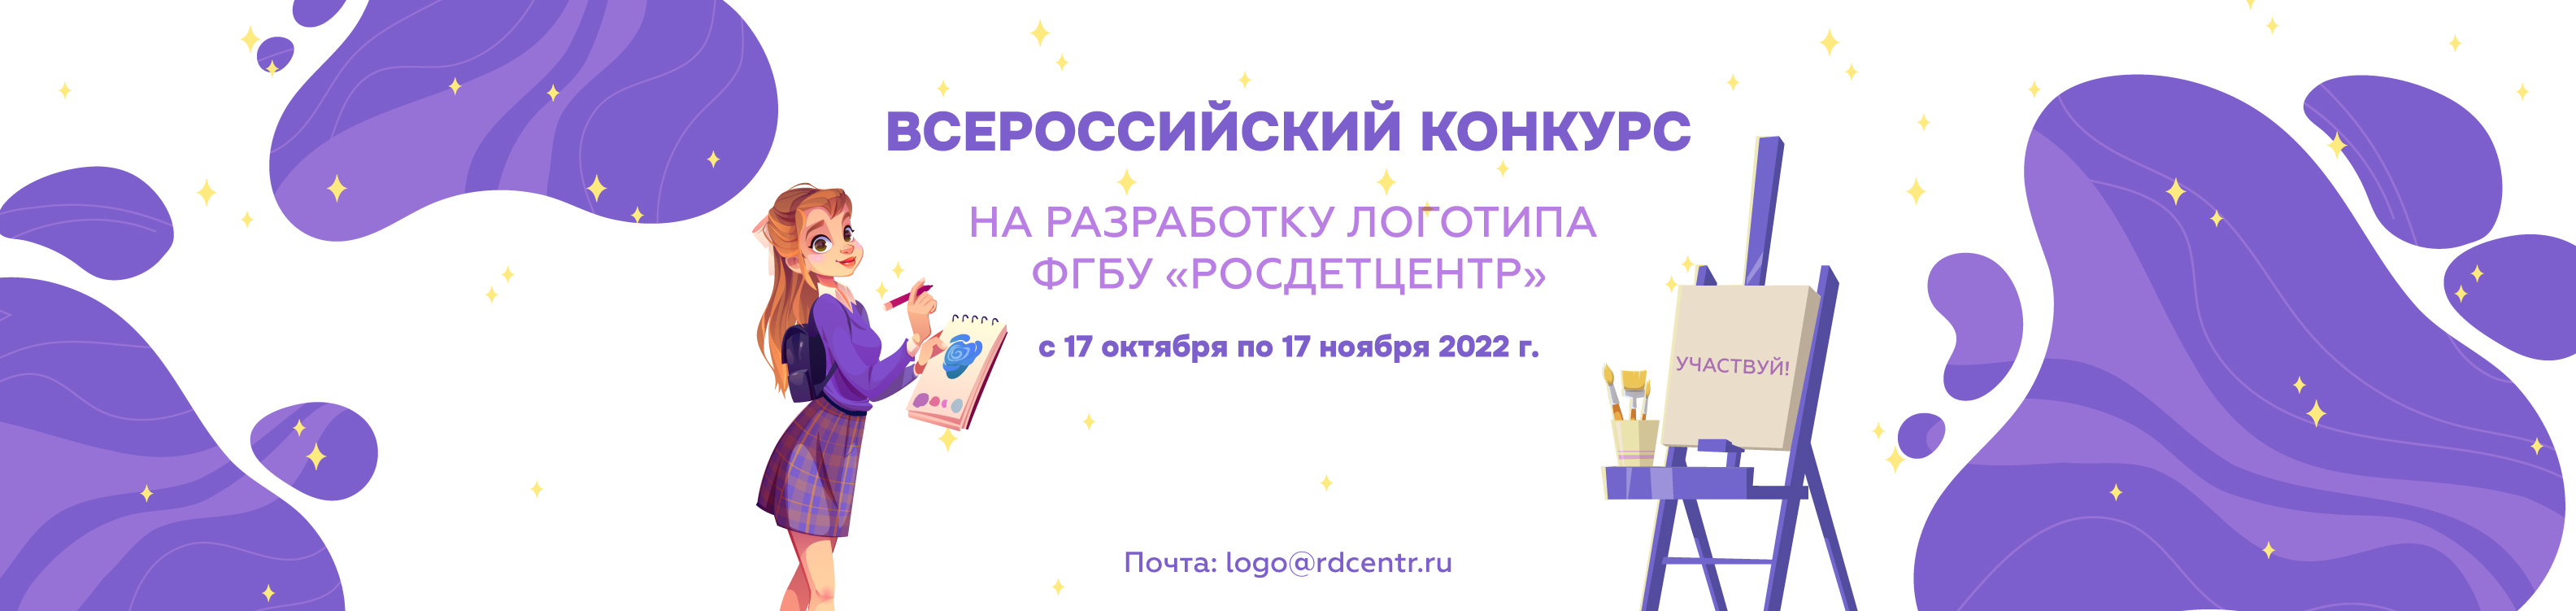 Всероссийский конкурс на разработку логотипа Федерального государственного бюджетного учреждения «Российский детско-юношеский центр»